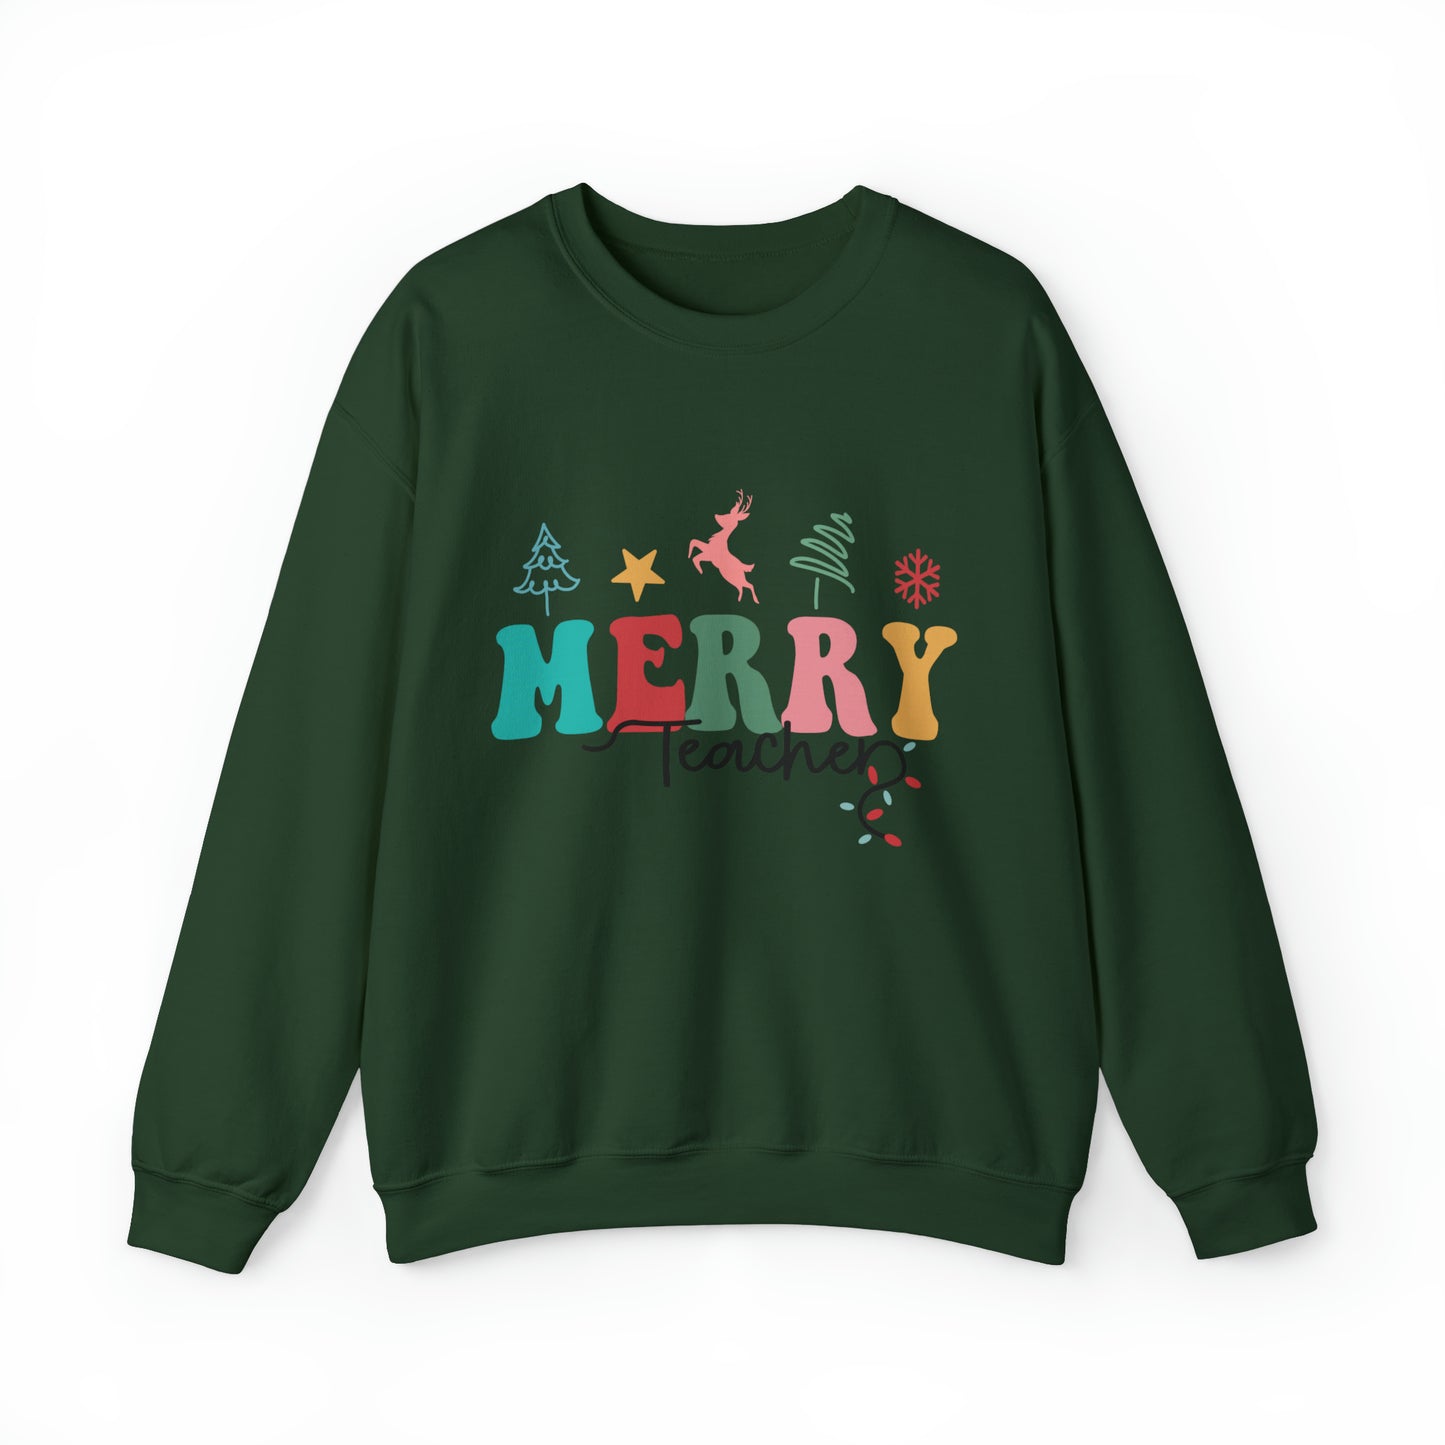 Merry Teacher Retro Women's Christmas Sweatshirt